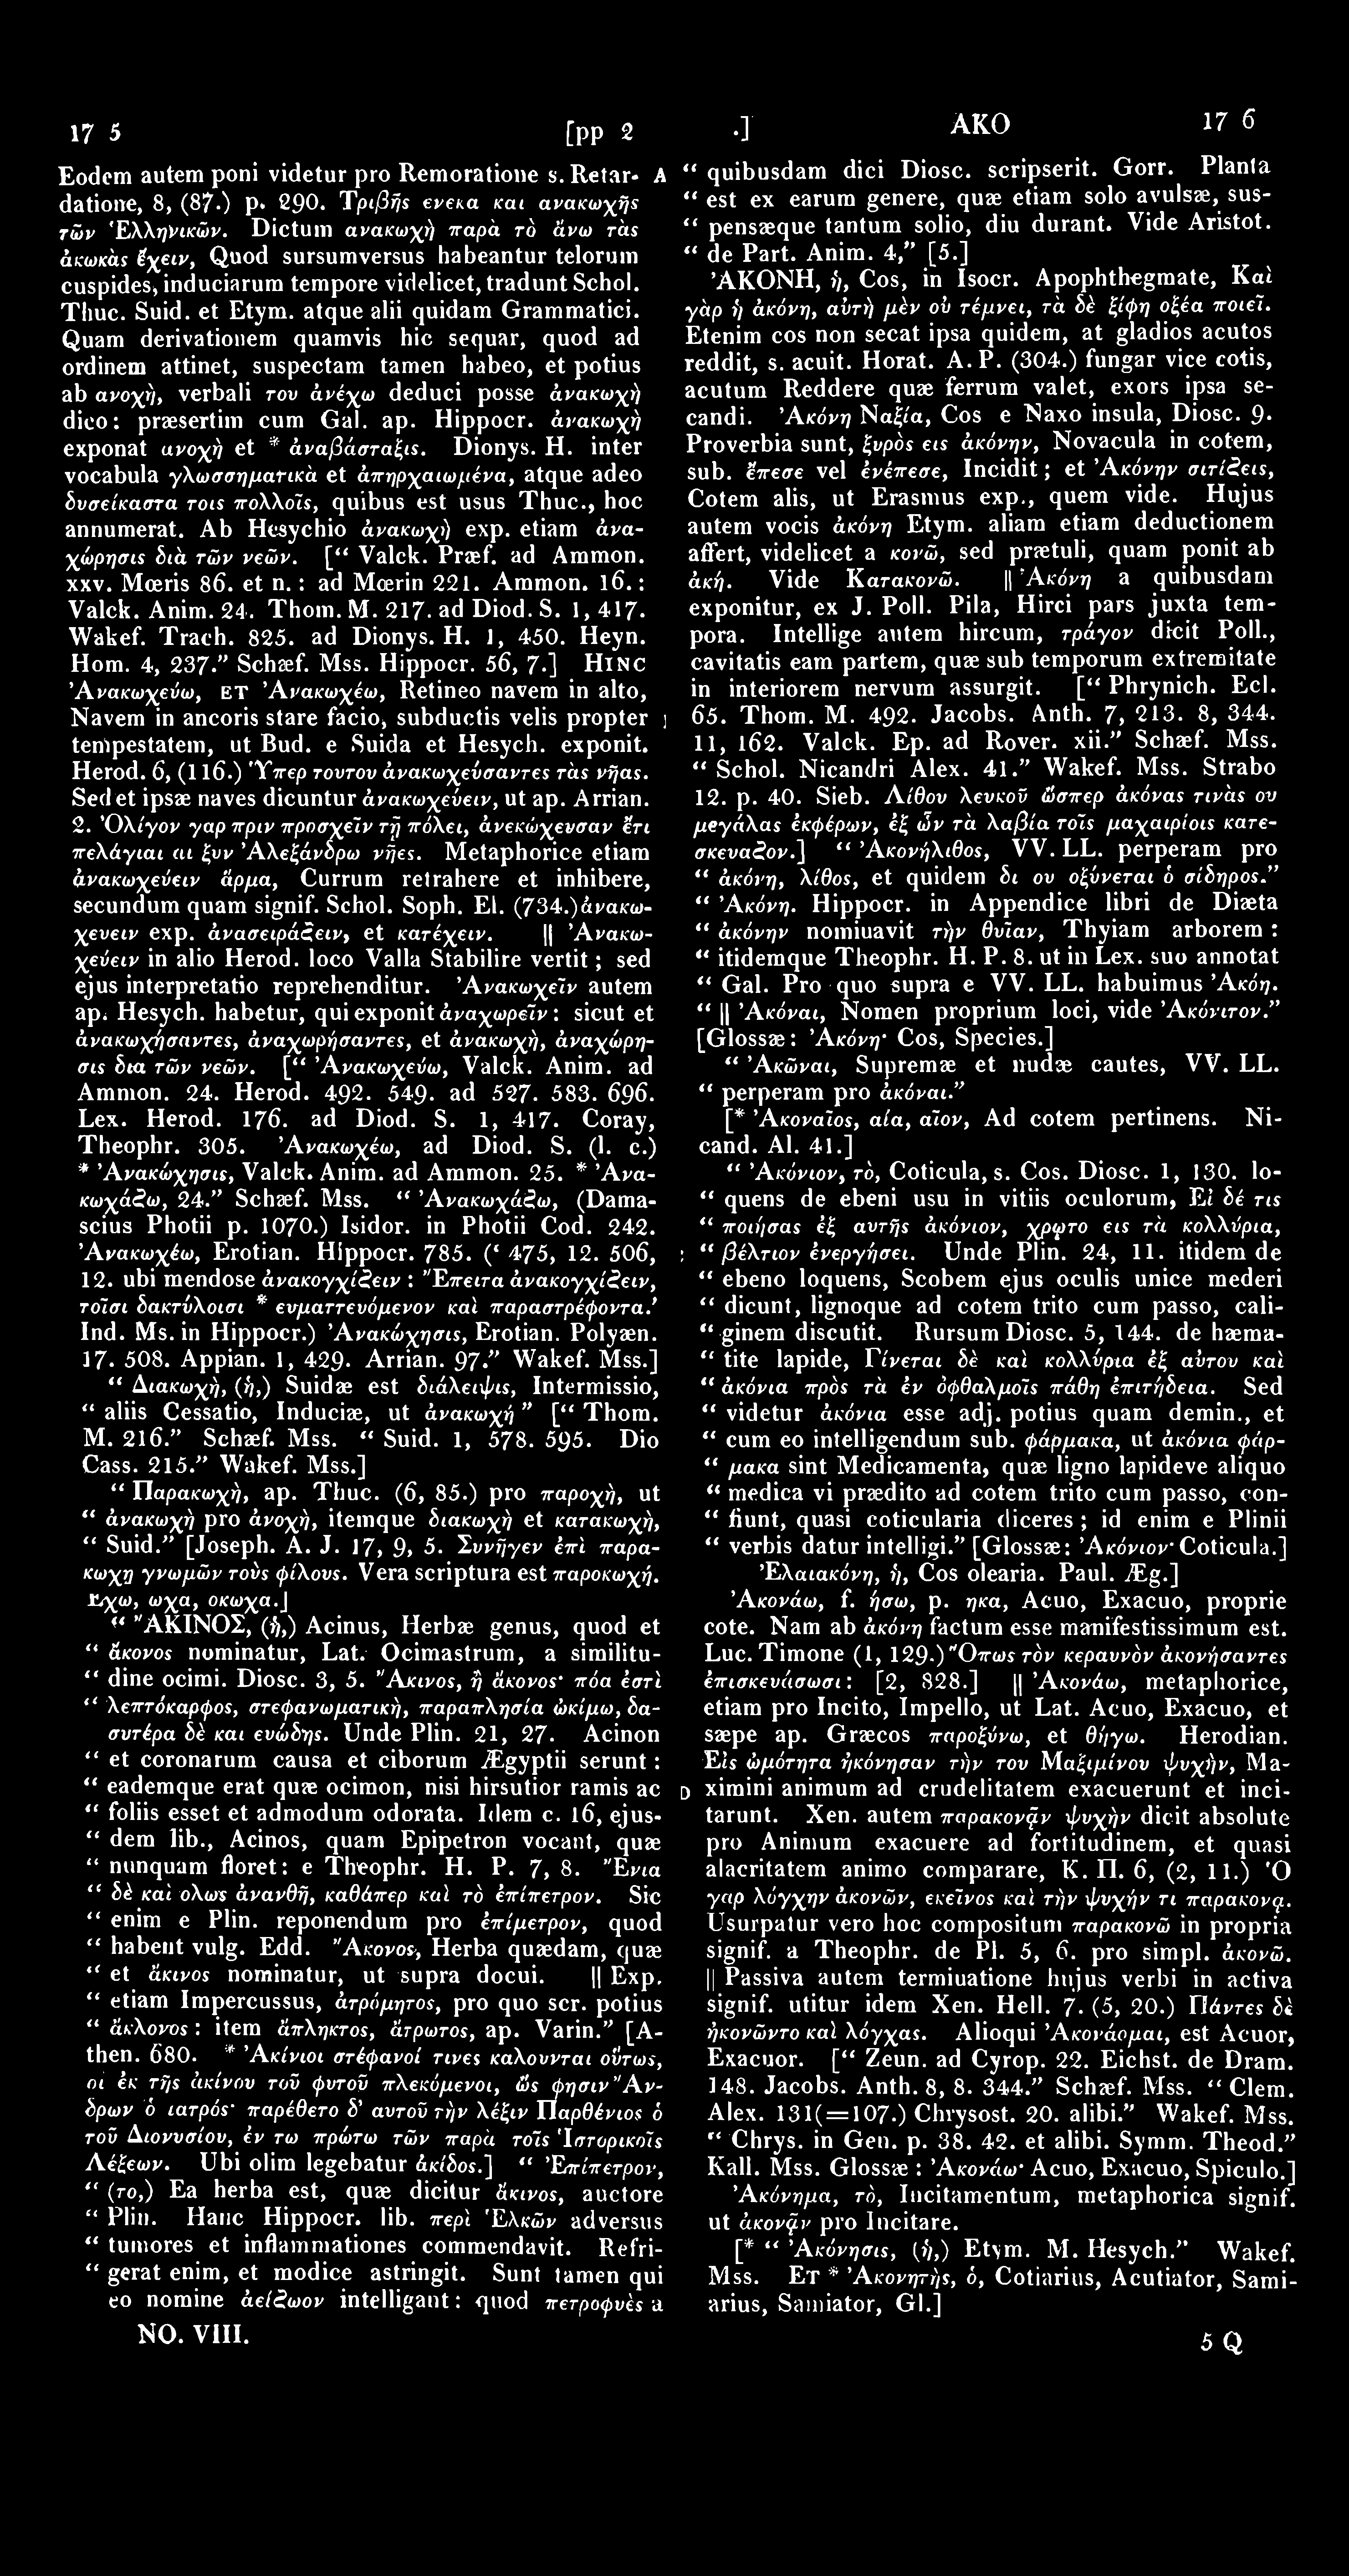 1735 Ακον [pp. 271 Eodem autem poni videtur pro Remoratione s. Retar- A datioue, 8, (87.) p* 290 Τριβής Ρ κα και ανακωχής τών Ελληνικών.